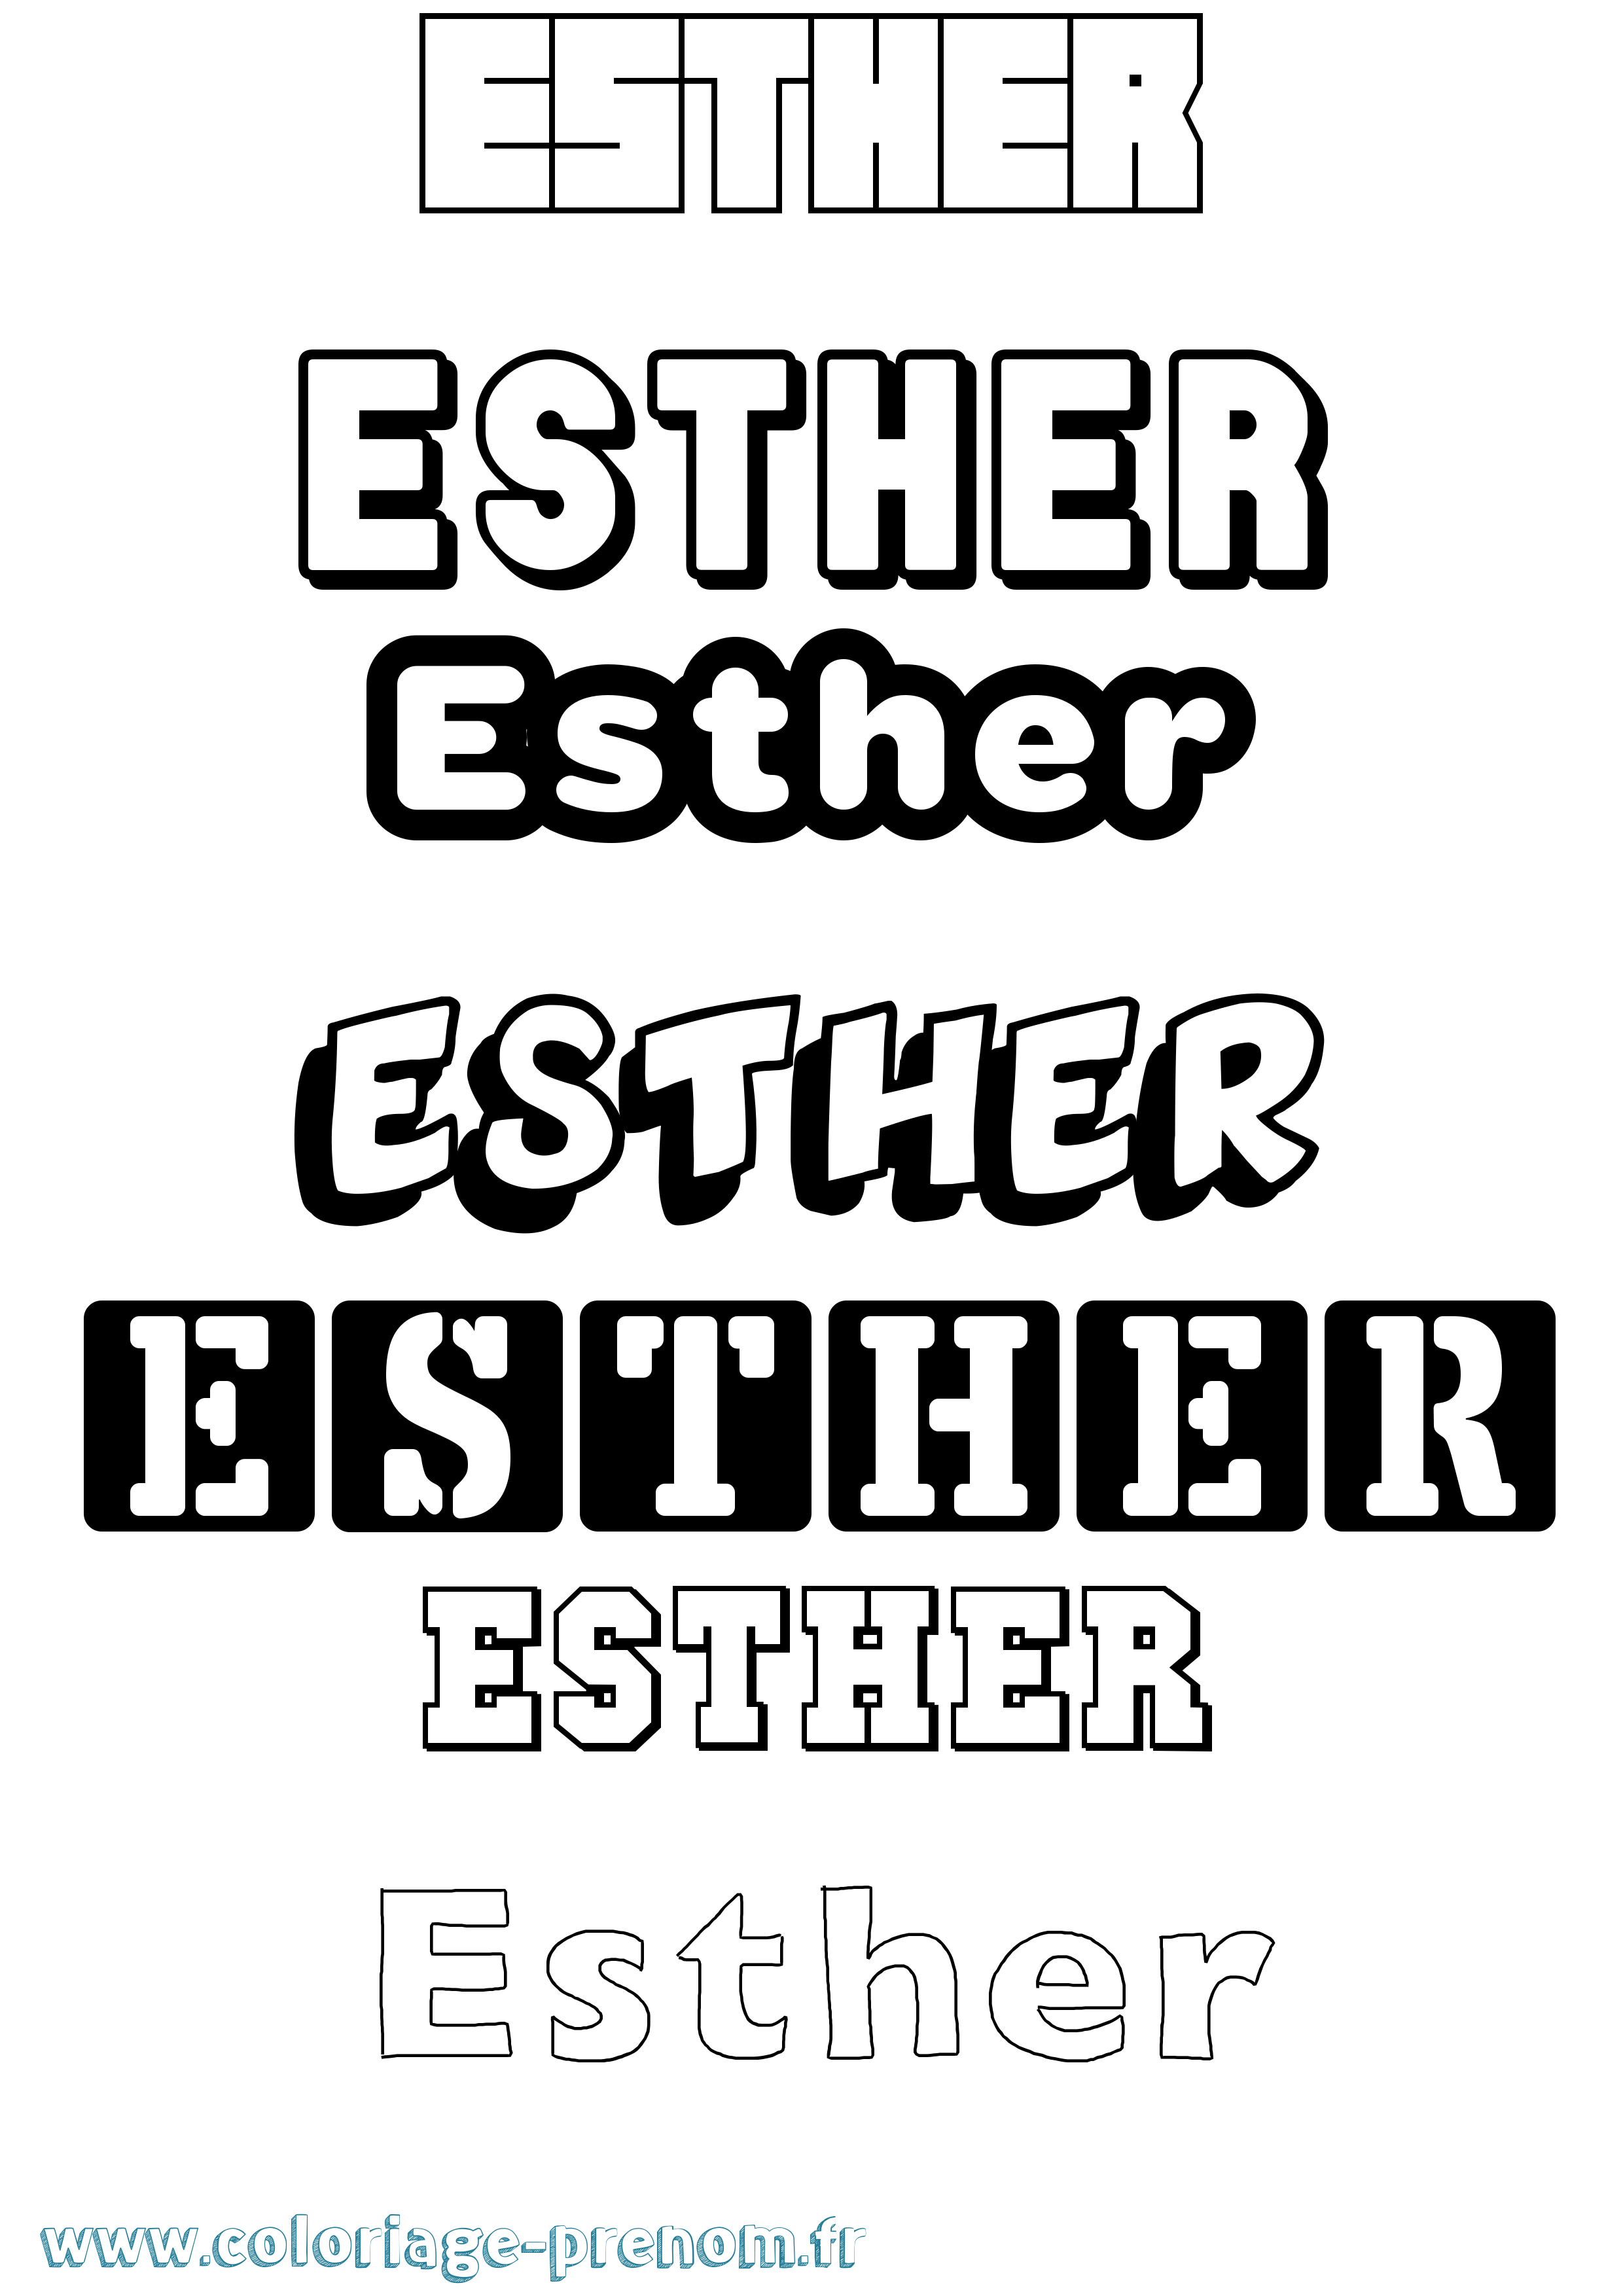 Coloriage prénom Esther Simple